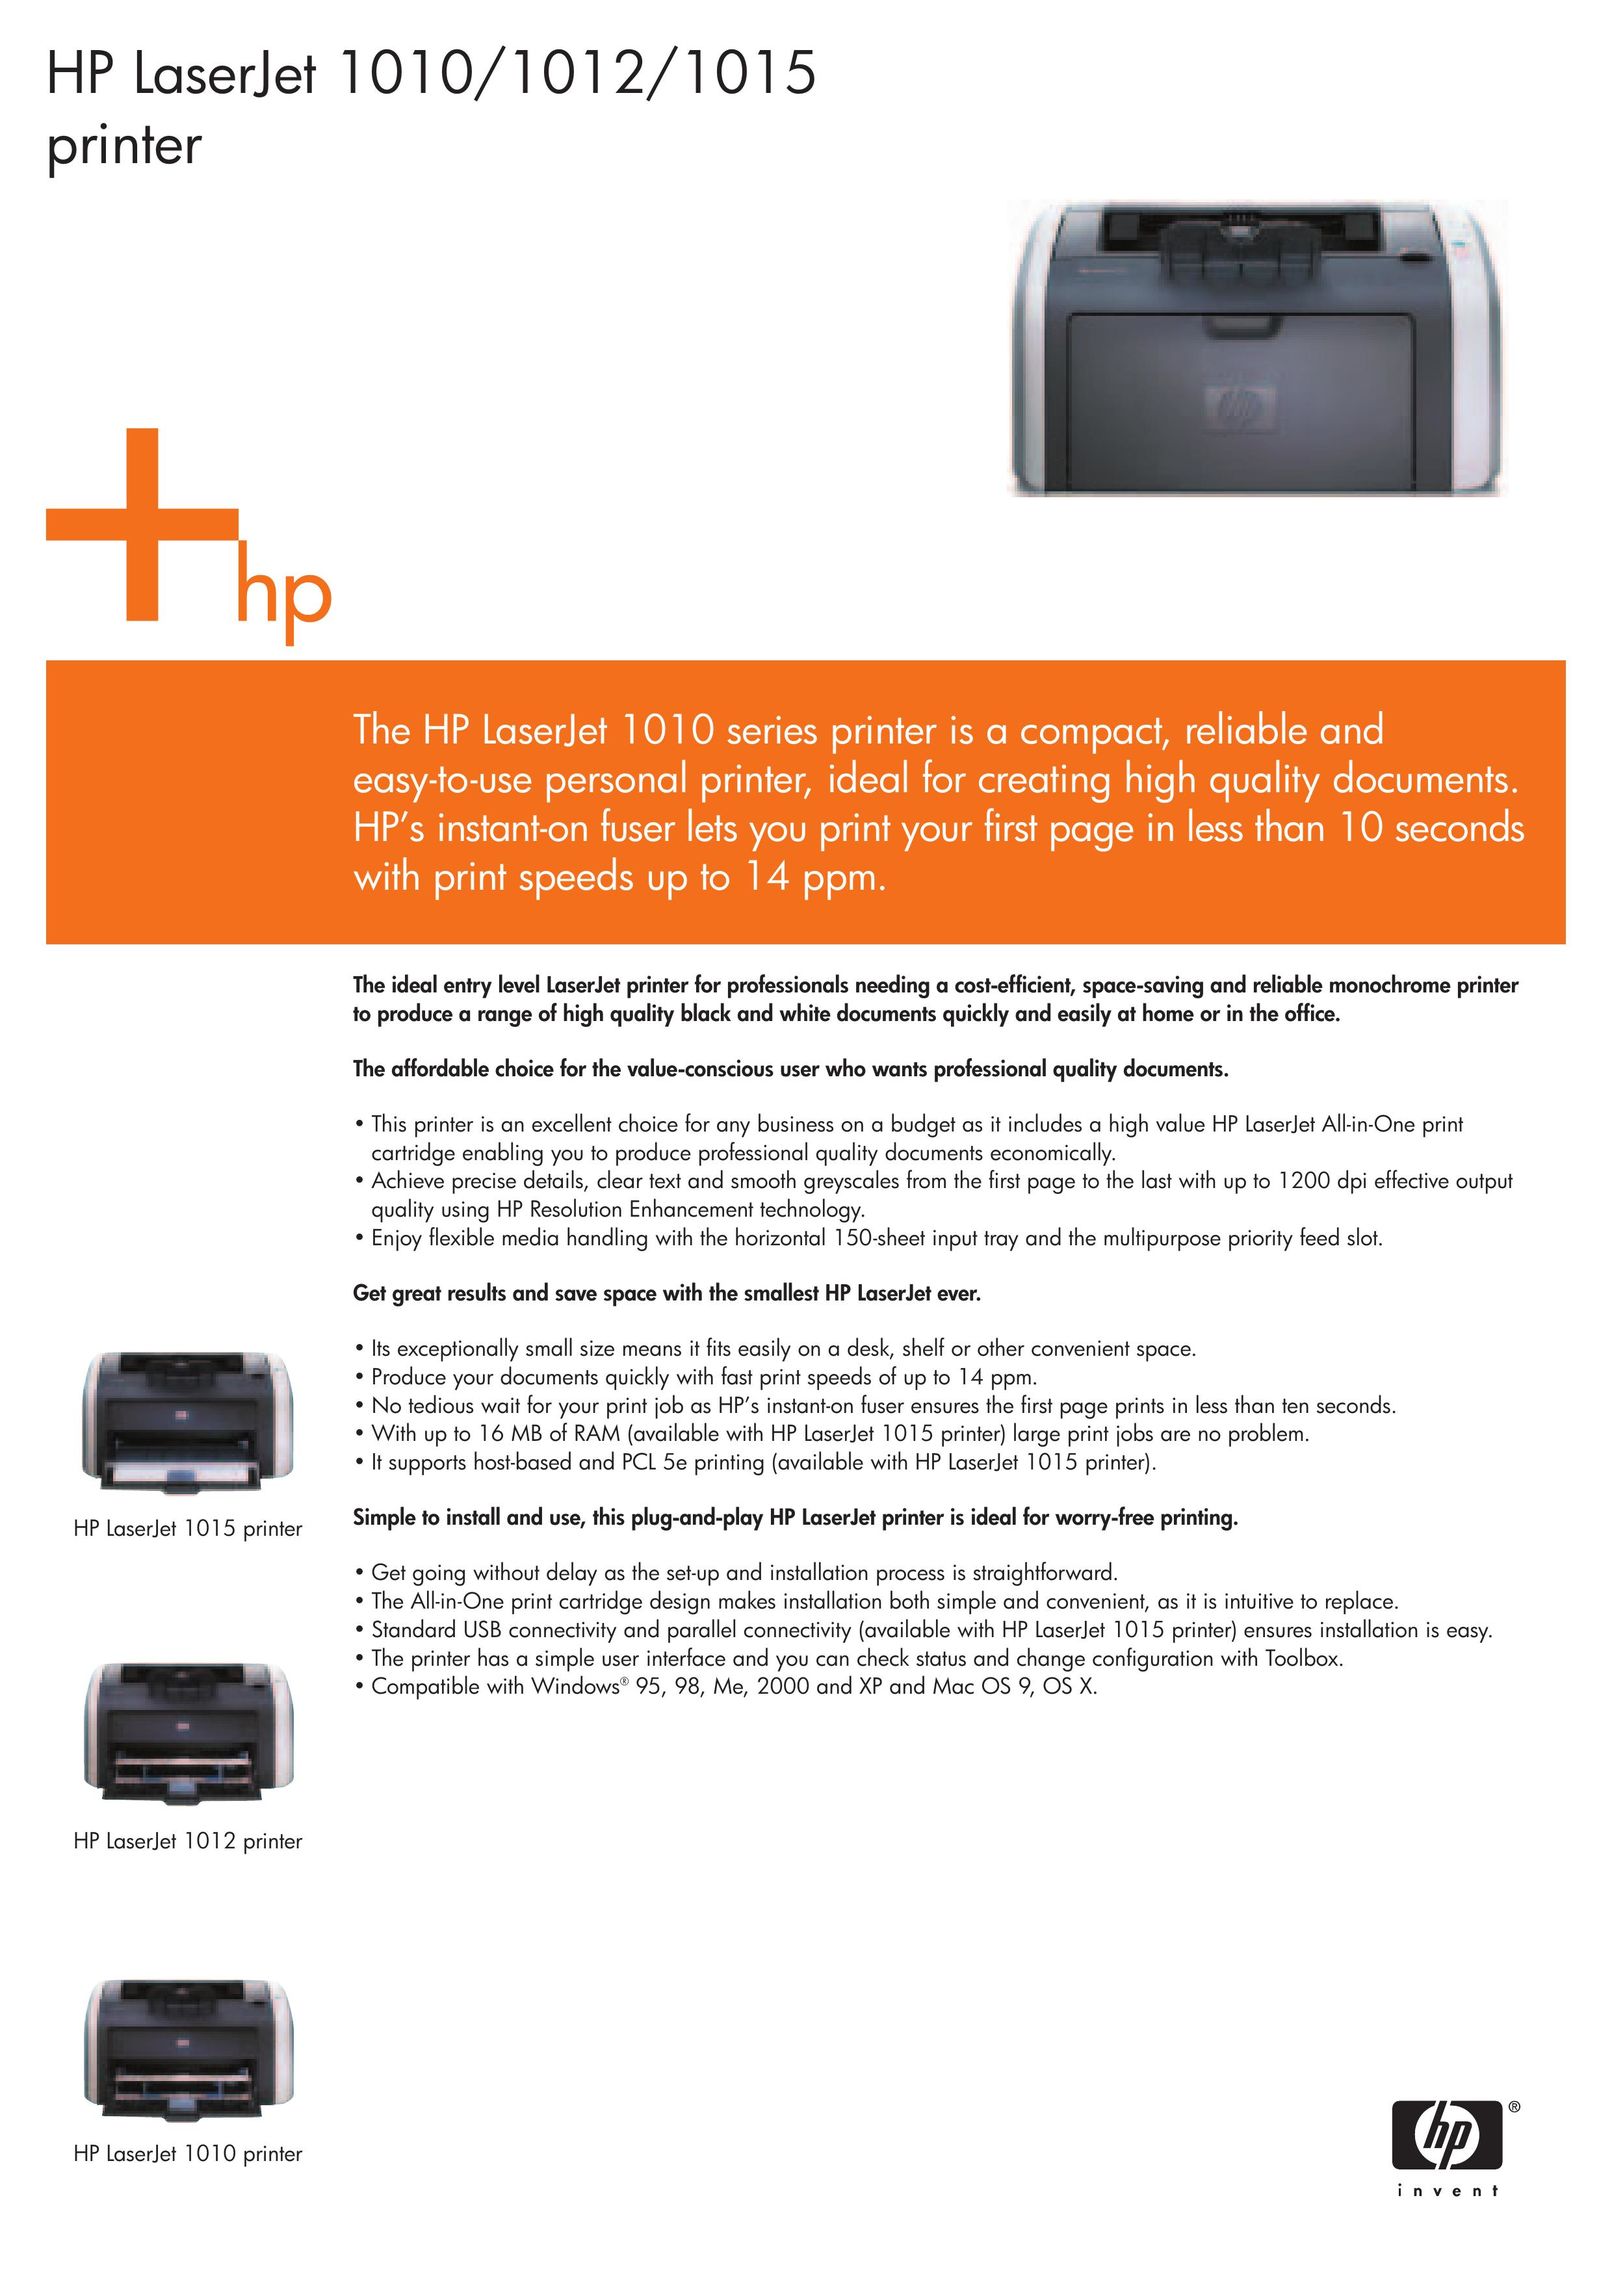 HP (Hewlett-Packard) 1010 Printer User Manual